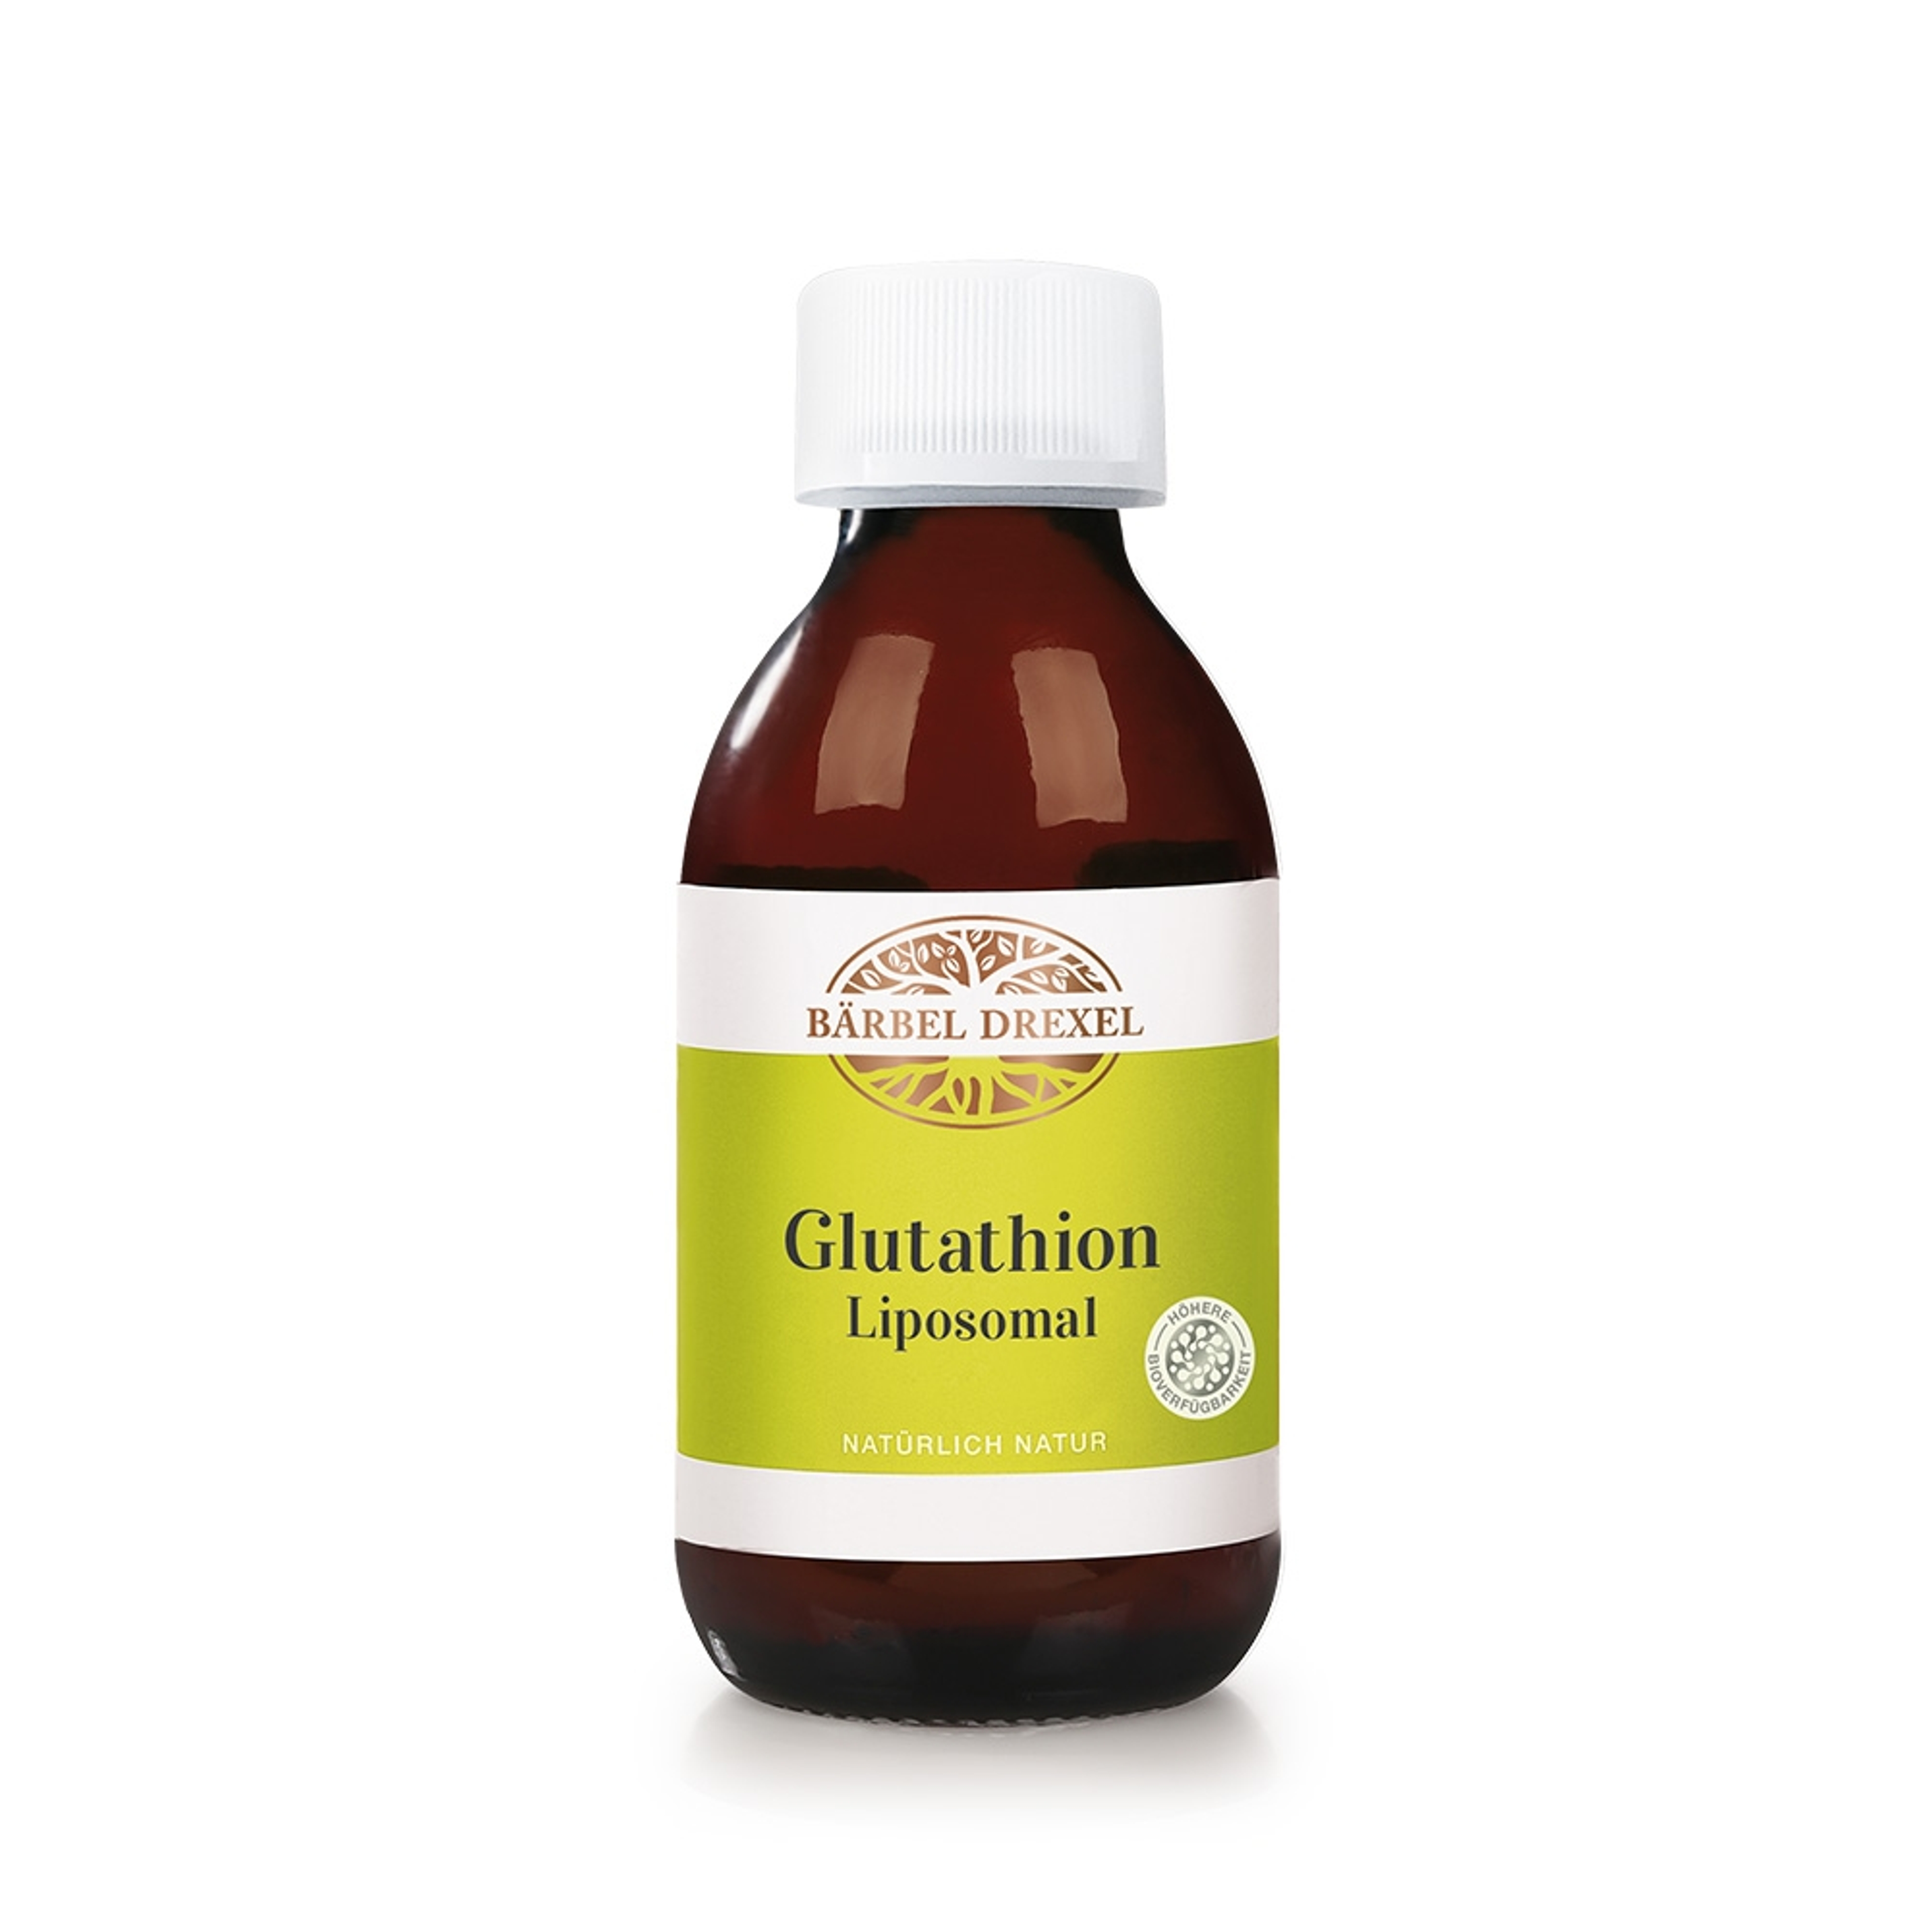 78181-glutathion-liposomal-150ml_ohne-deko.jpg